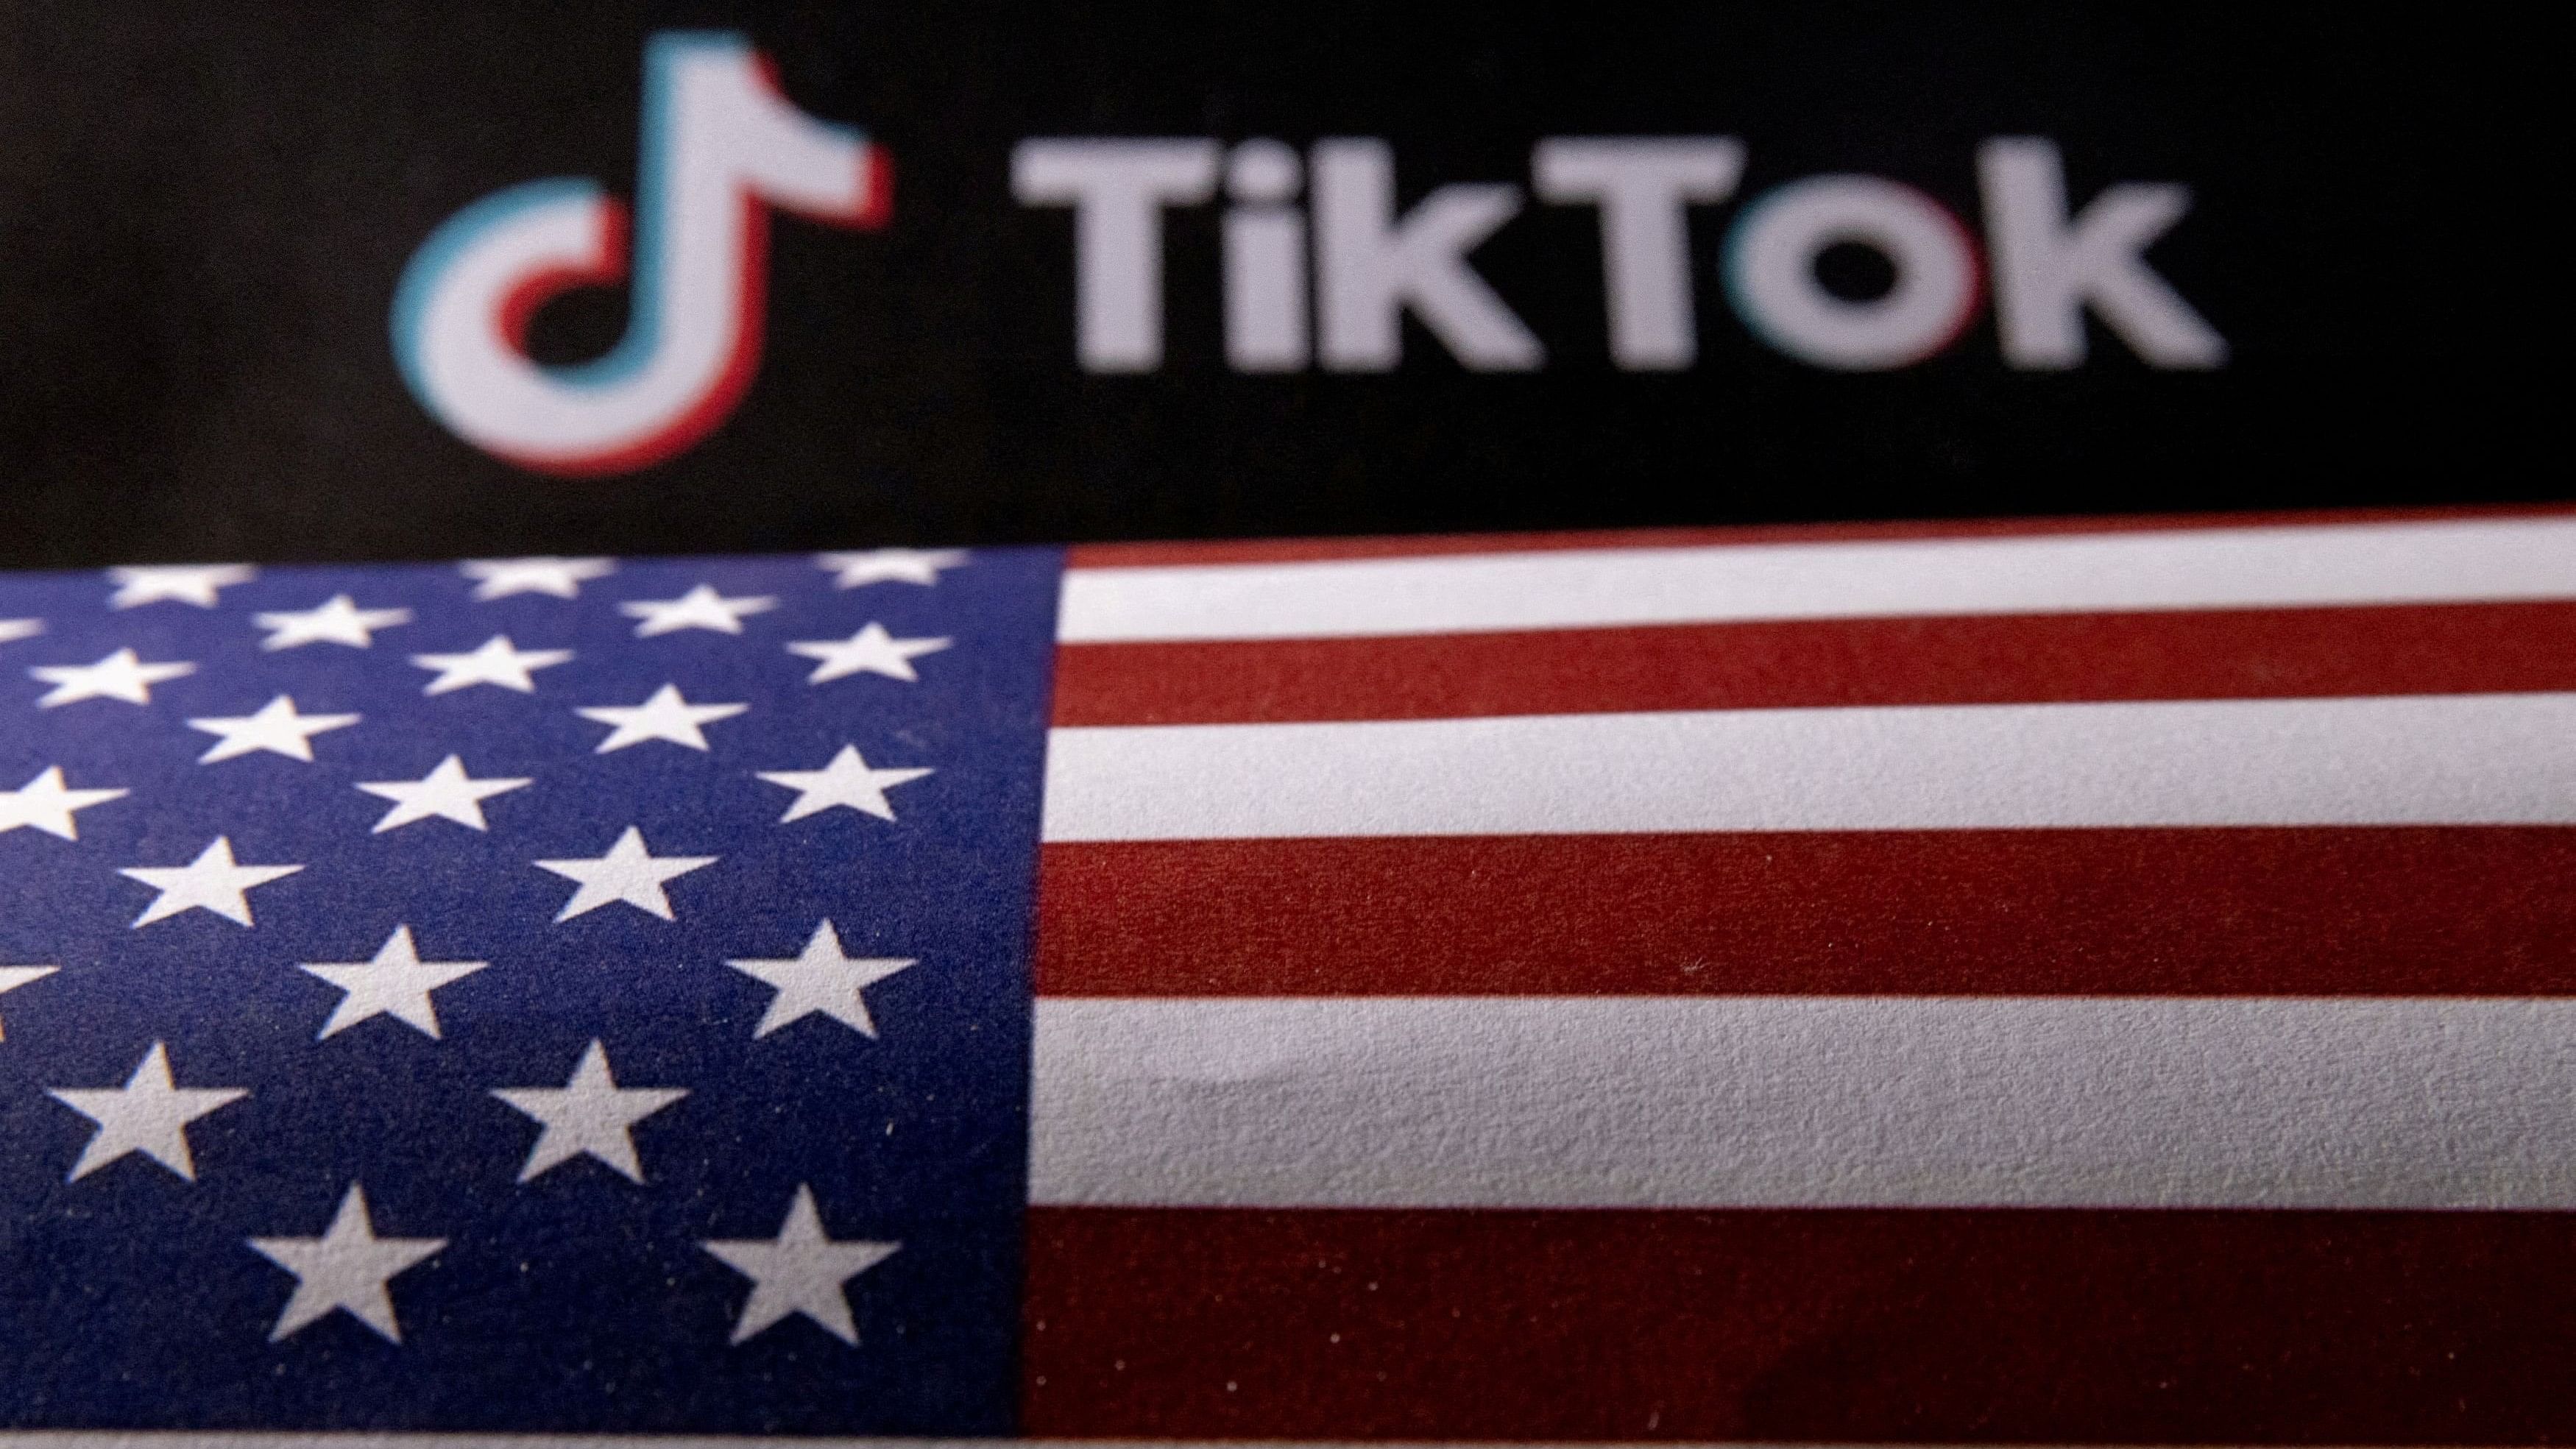 <div class="paragraphs"><p>The US flag and the TikTok logo </p></div>